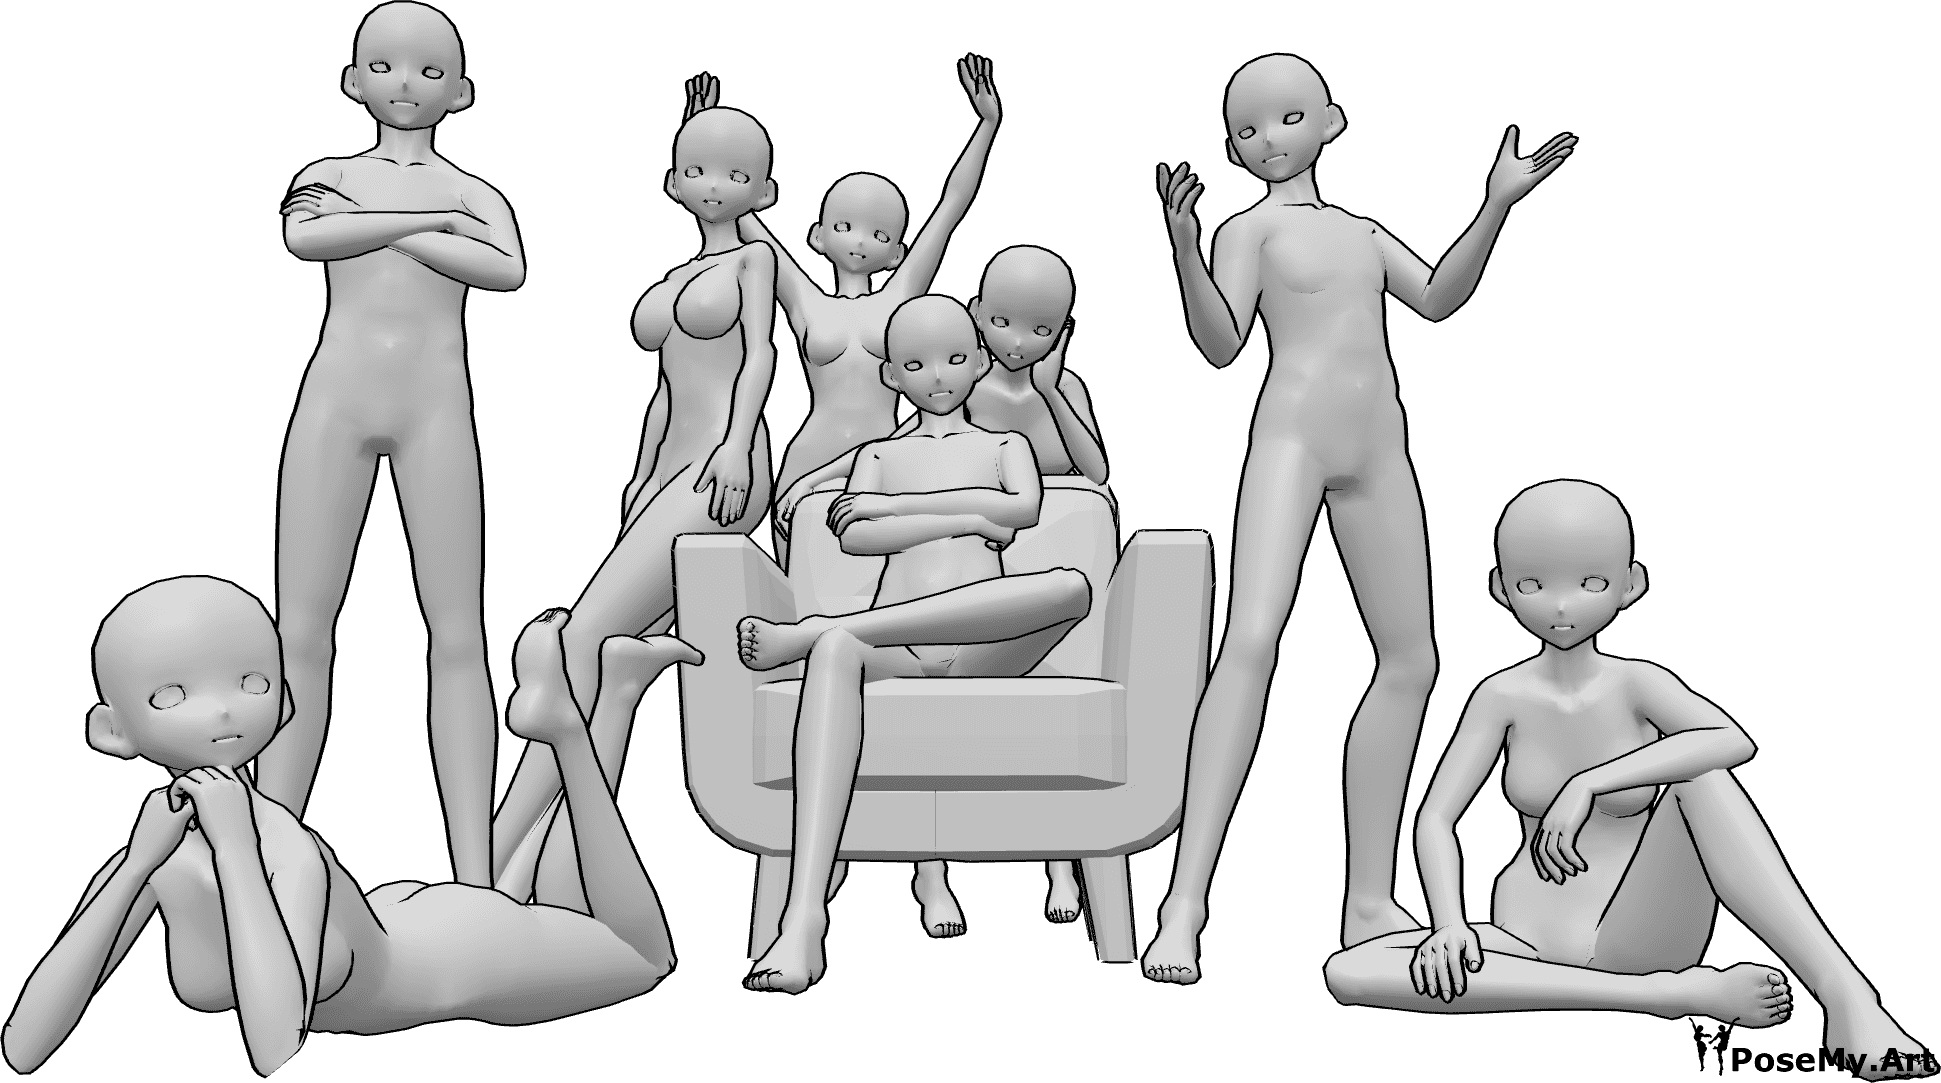 Référence des poses- Pose pour une photo de groupe d'anime - Groupe de huit femmes et hommes animés posant pour une photo de groupe amicale, assis et debout.